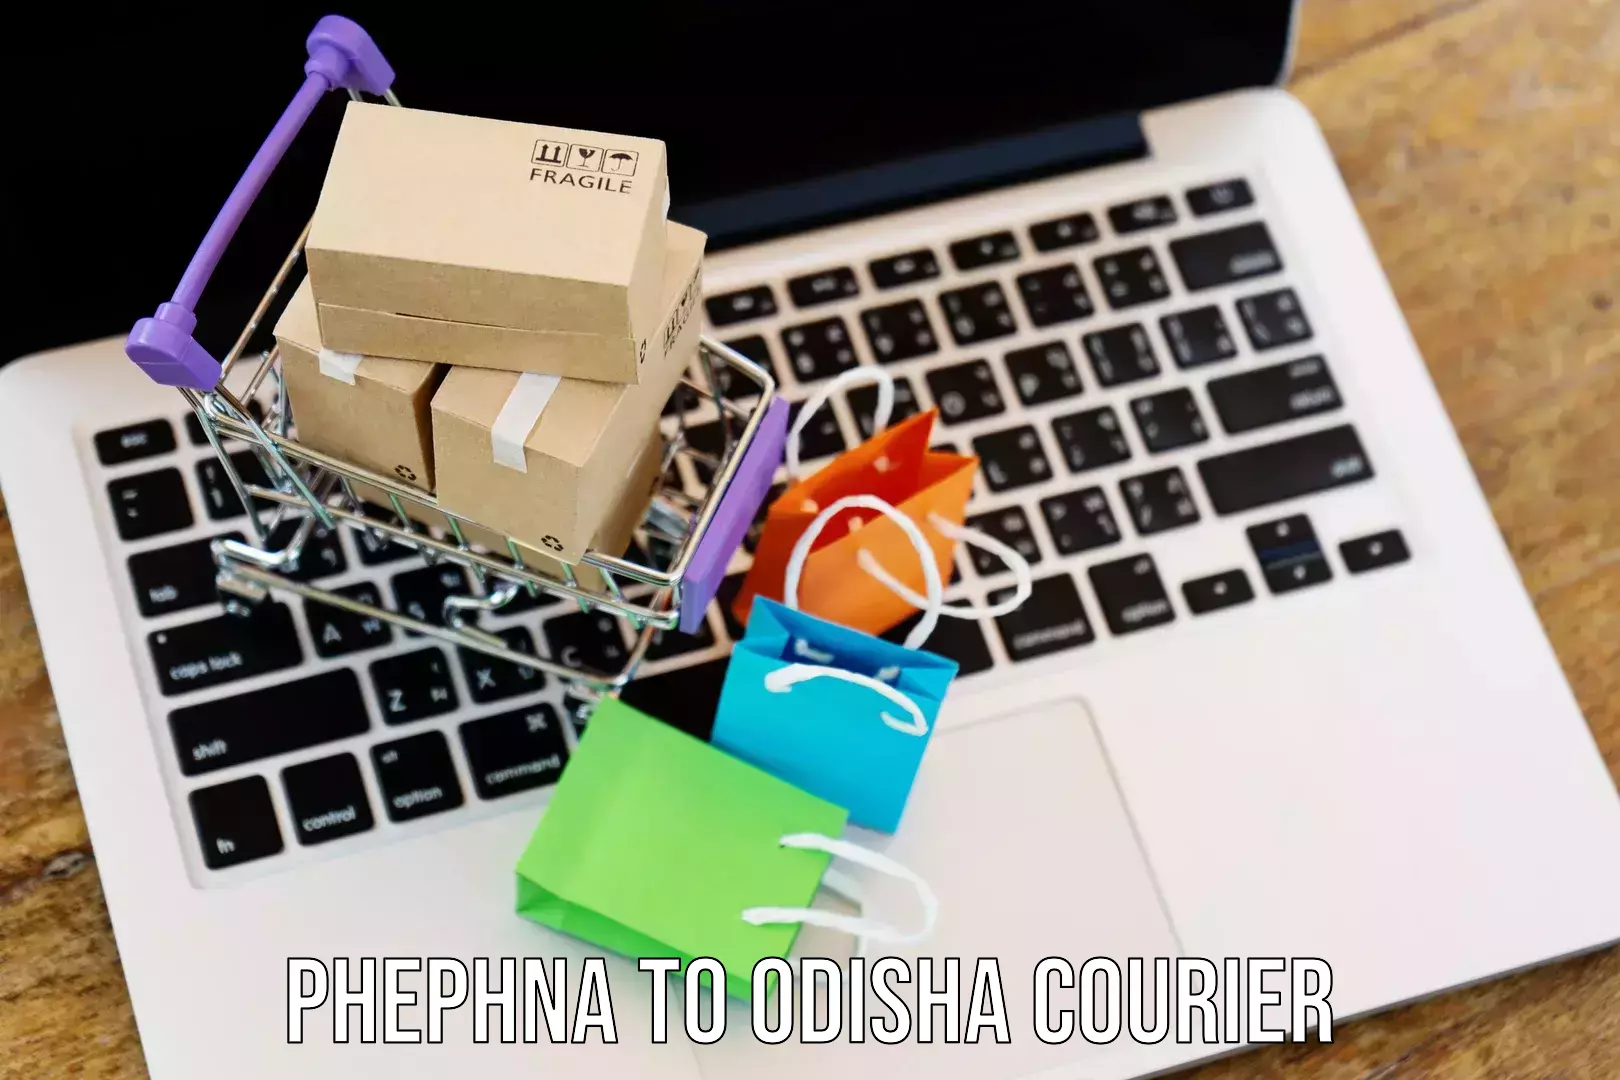 Door-to-door freight service Phephna to Binka